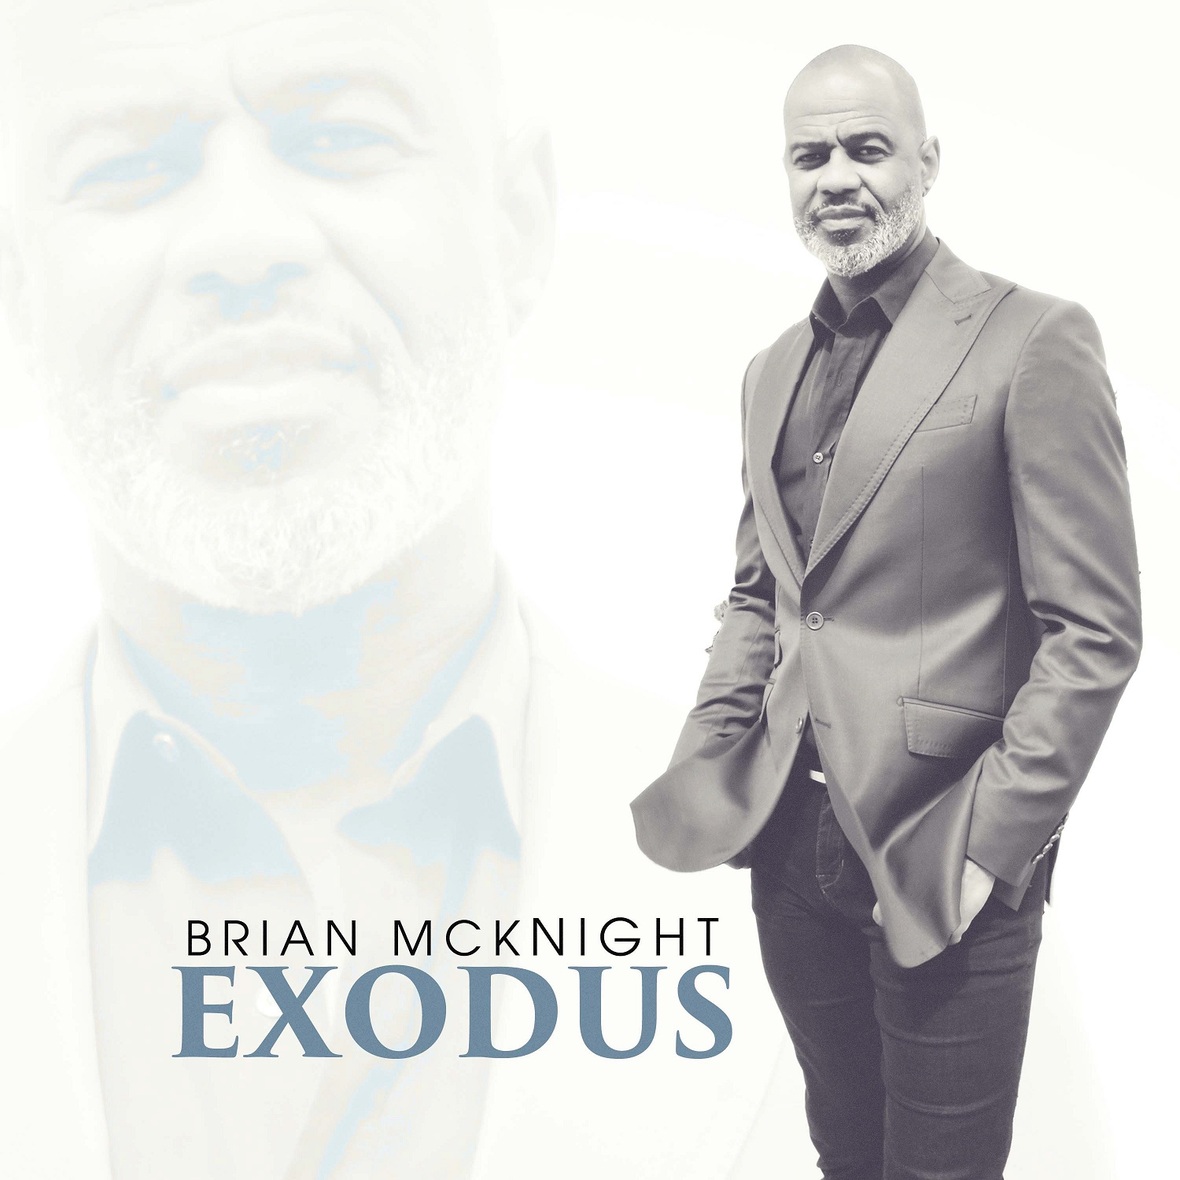 BRIAN MCKNIGHT Announces The Release of His 20th Studio Album "EXODUS